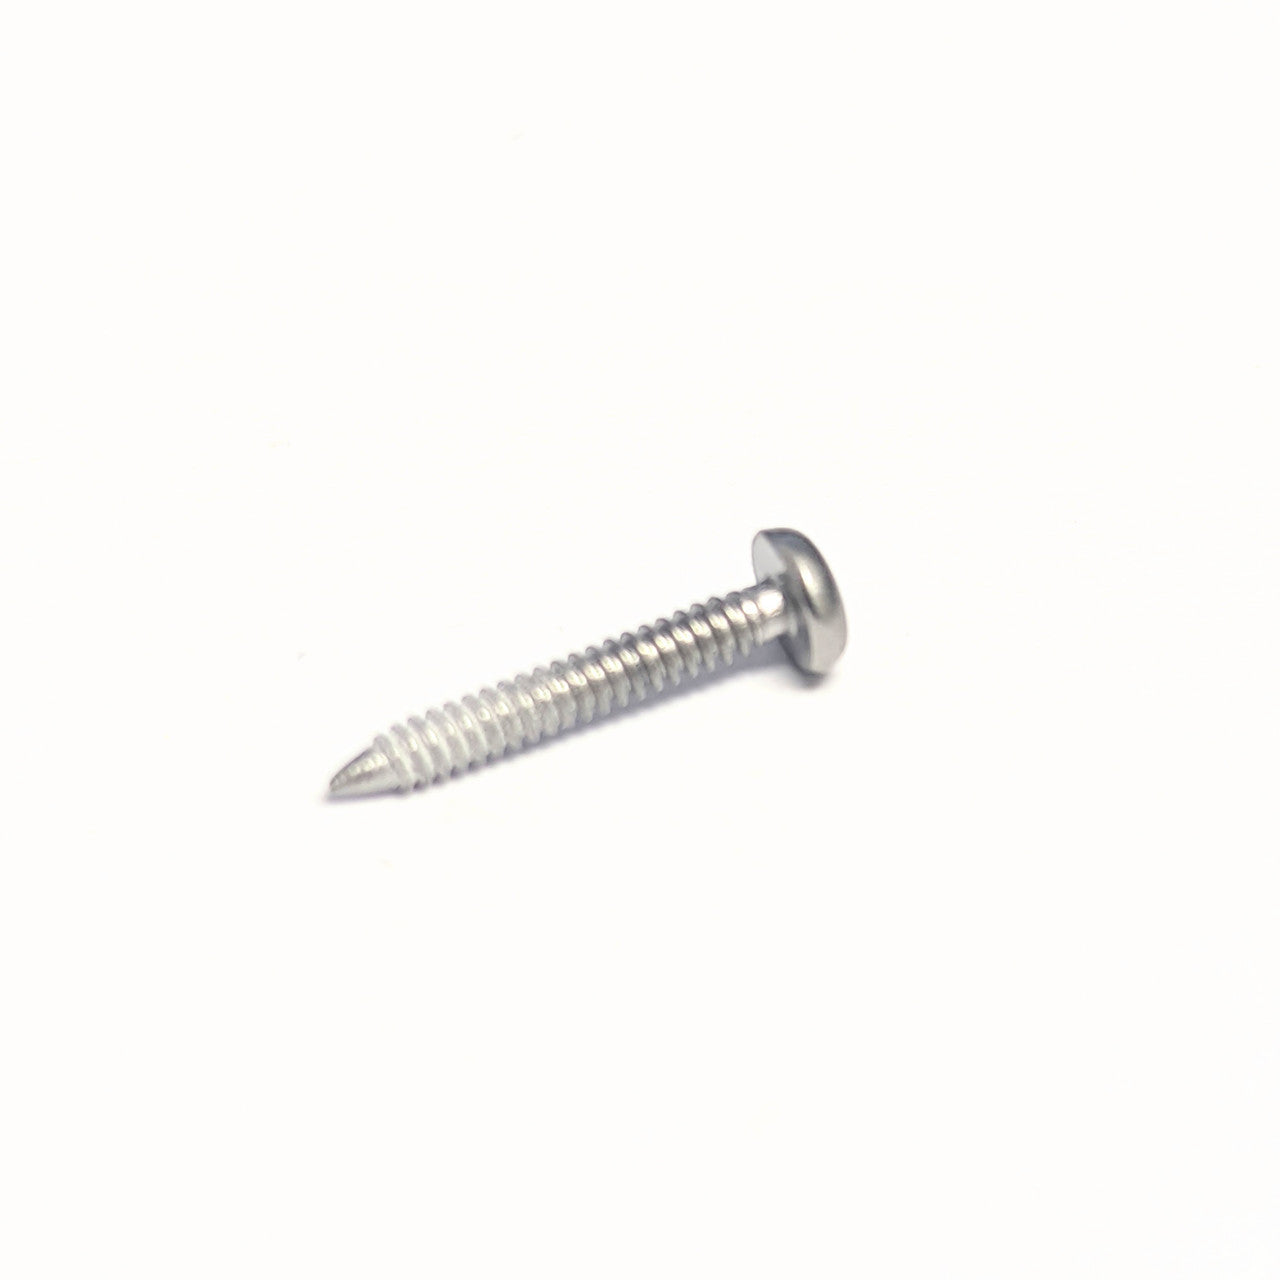 Replacement screws for Kilgore / Nissin 200 series teeth